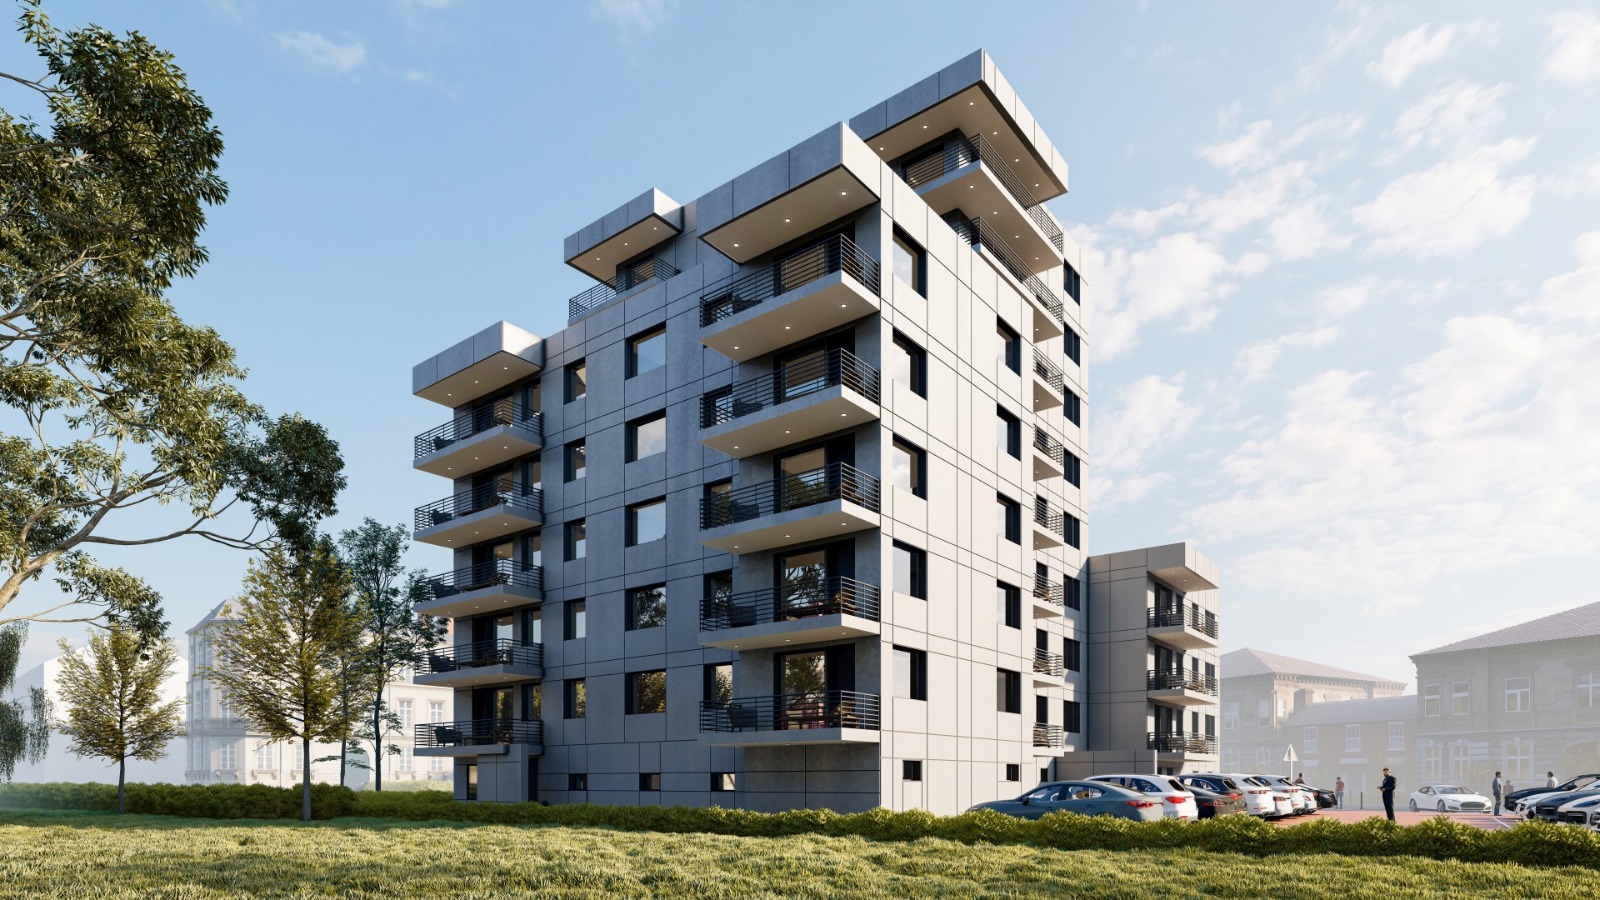 15 vermietete Wohnungen in Mönchengladbach (Energetische Sanierung)